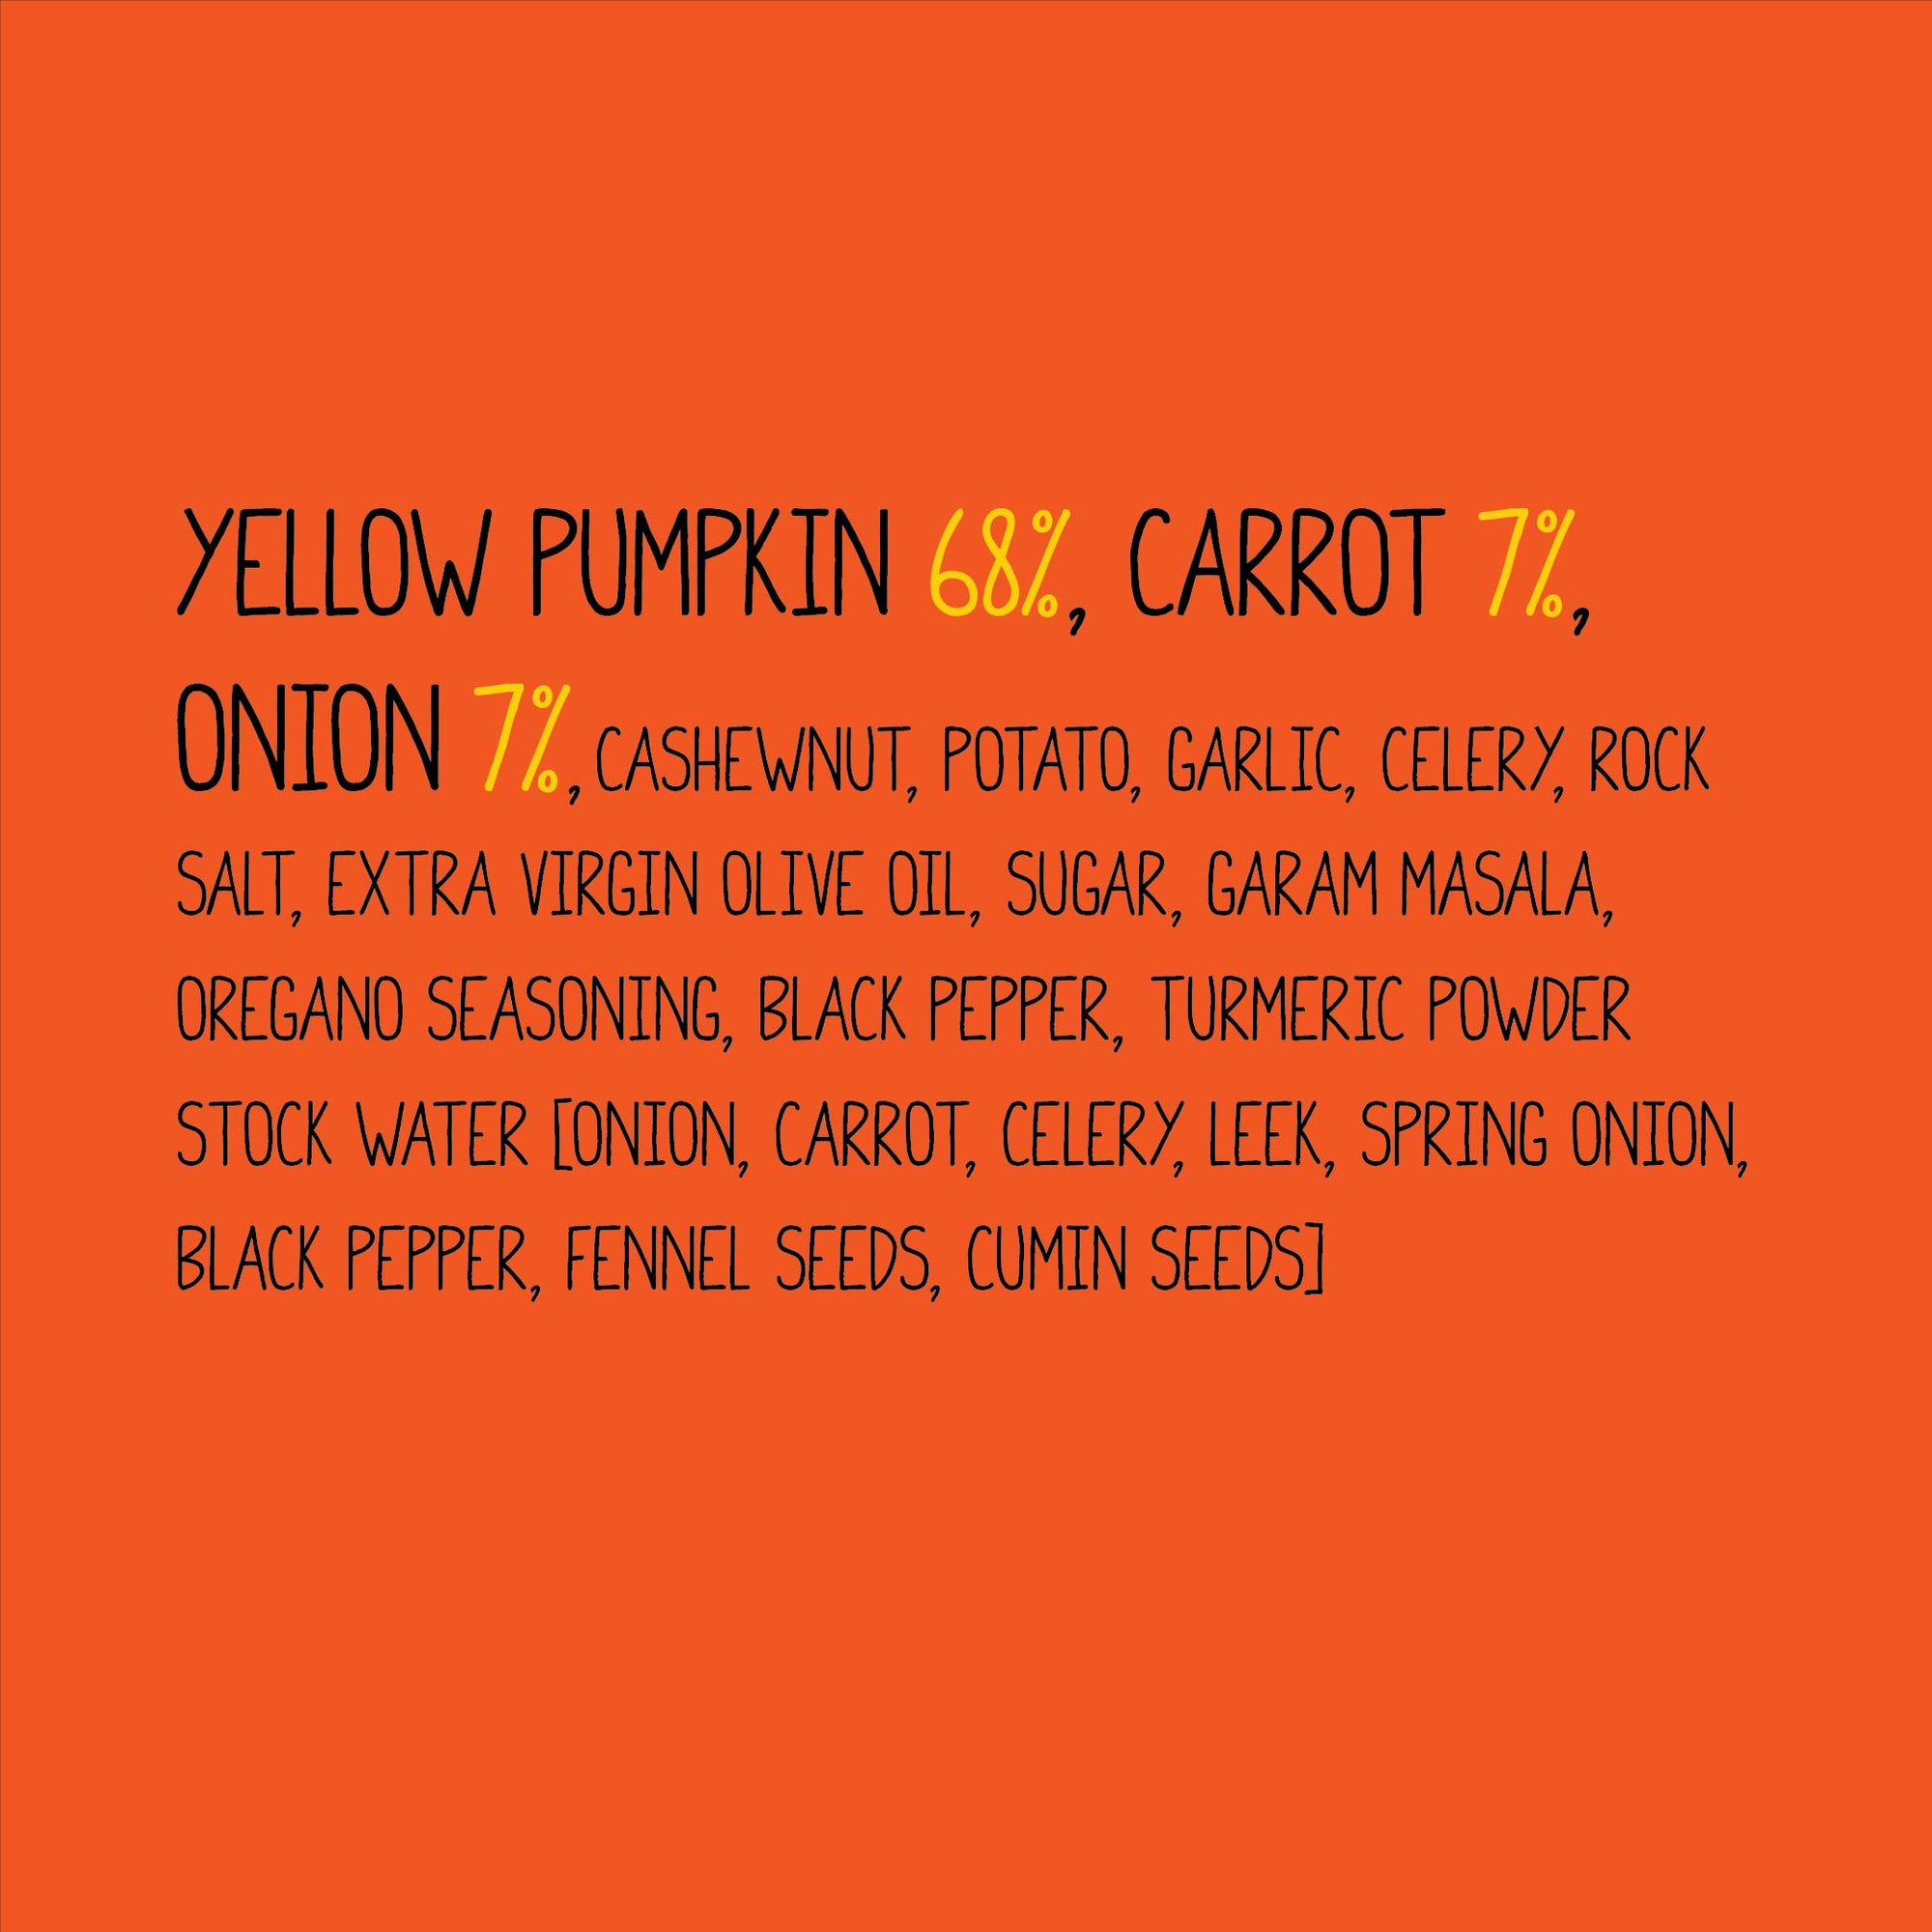 Curried Pumpkin Soup | 10X More Veggies | Serves 4 | Zip-Lock Pack